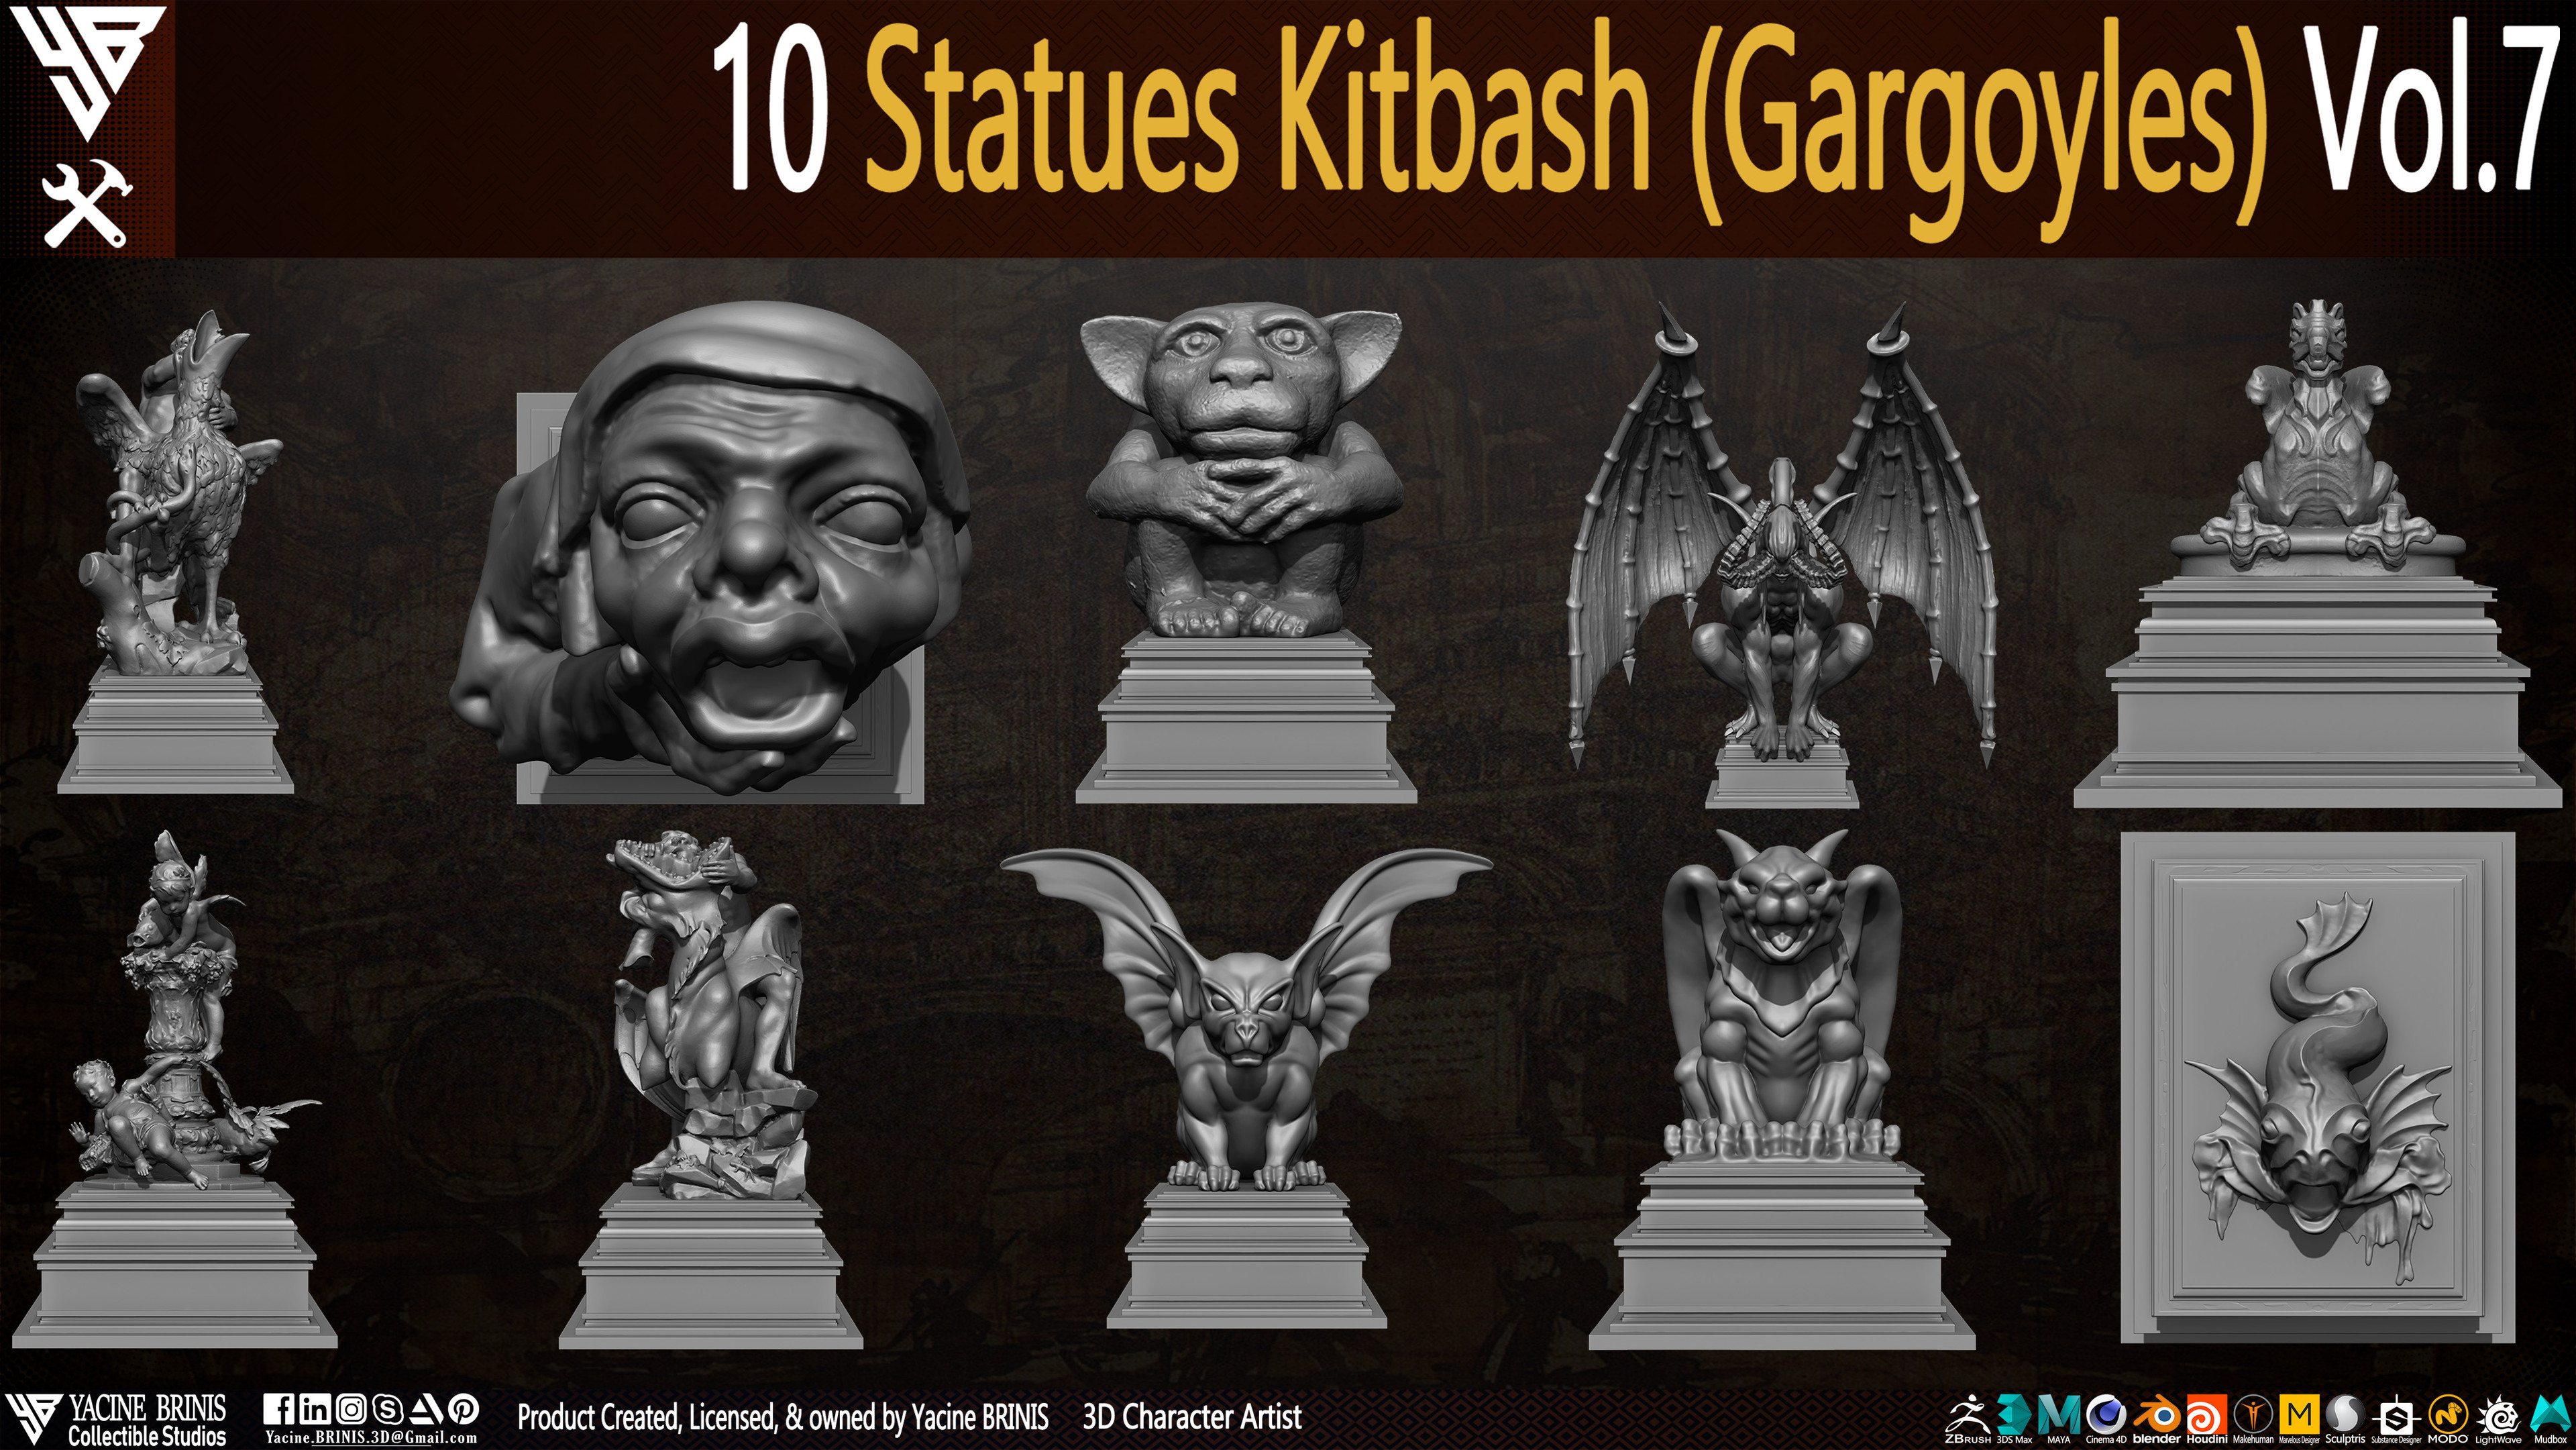 Statues Kitbash by yacine brinis Set 49